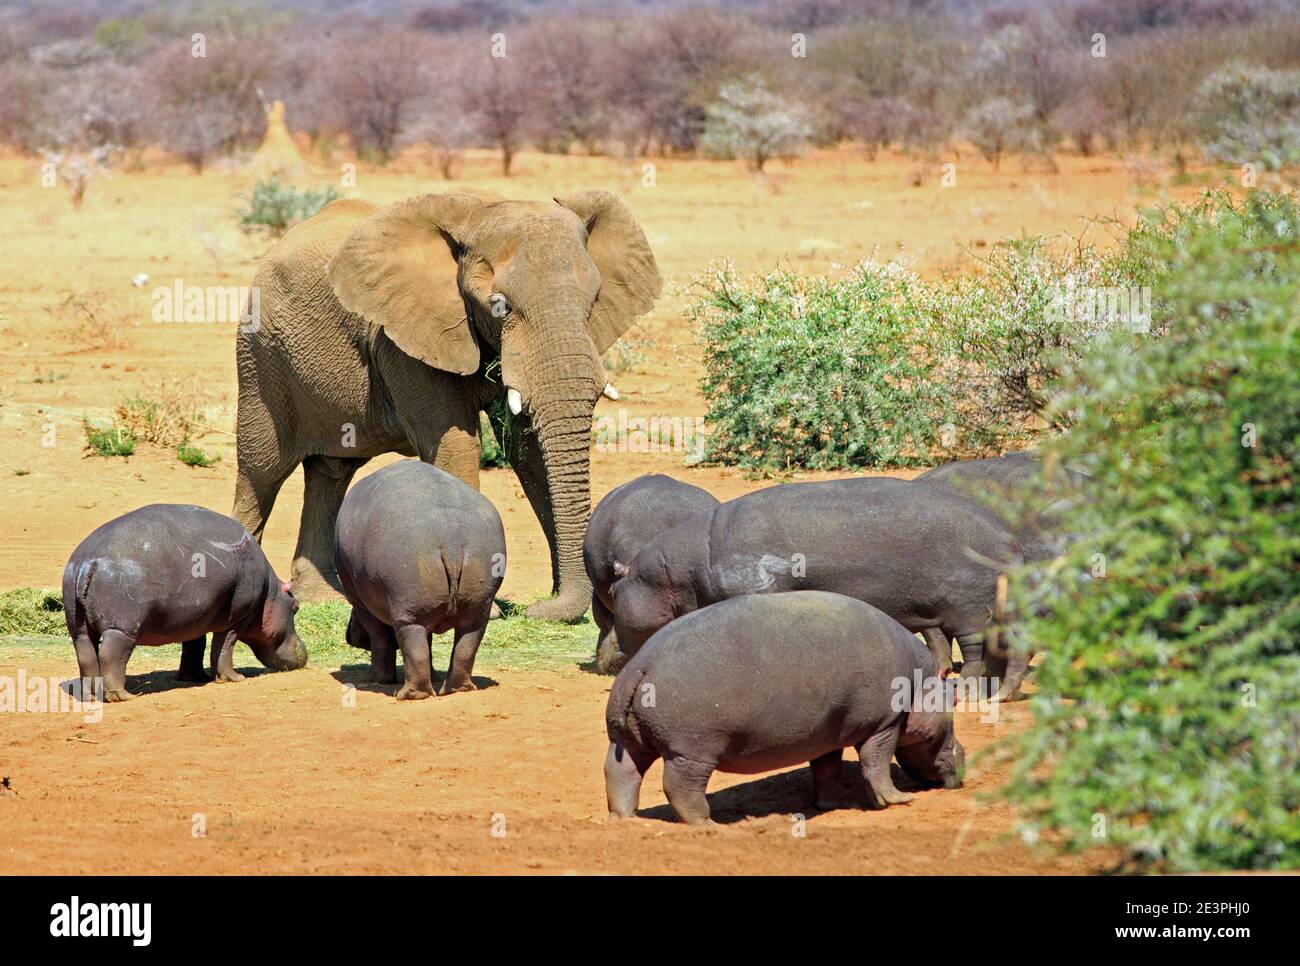 Grande elefante africano in piedi accanto ad un gruppo di apparentemente piccolo ippopotamo Foto Stock